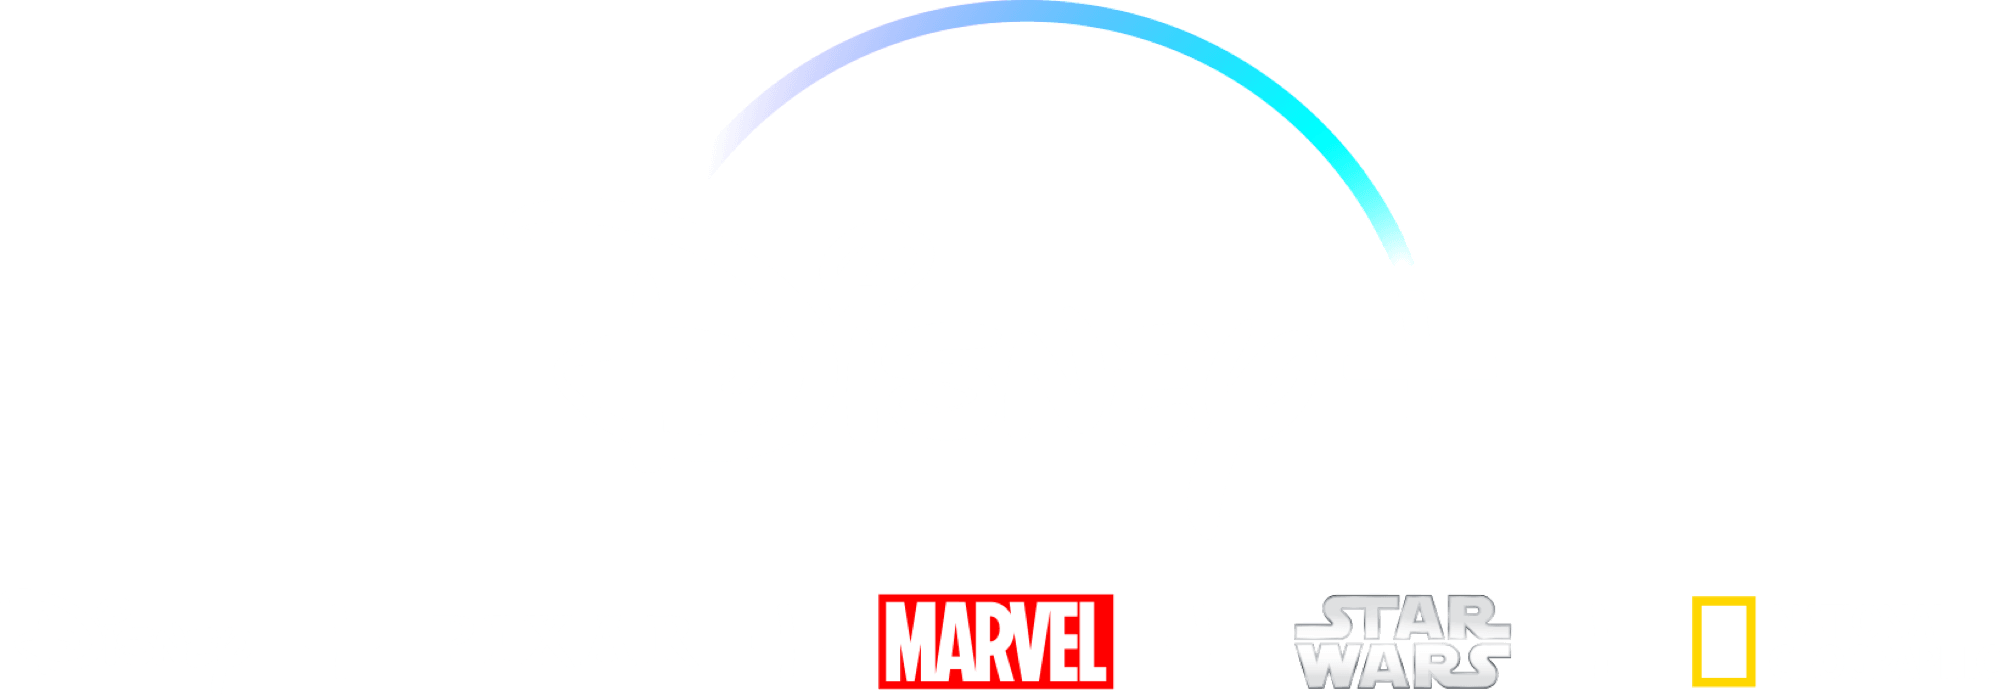 Disney Plus Logo Transparent - What Is Disney Plus